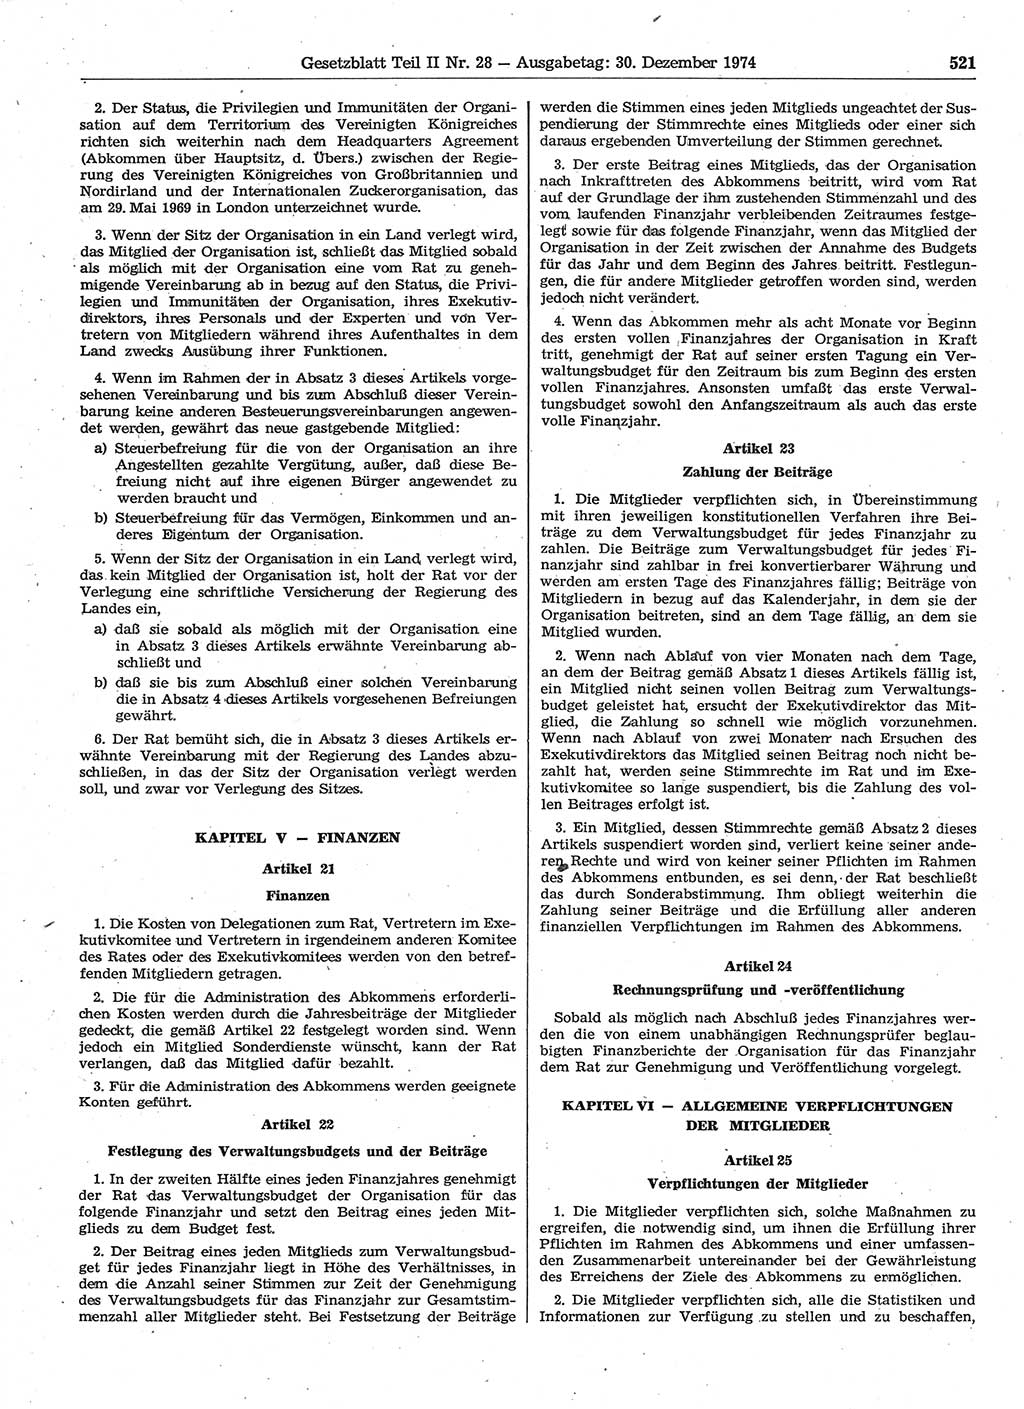 Gesetzblatt (GBl.) der Deutschen Demokratischen Republik (DDR) Teil ⅠⅠ 1974, Seite 521 (GBl. DDR ⅠⅠ 1974, S. 521)